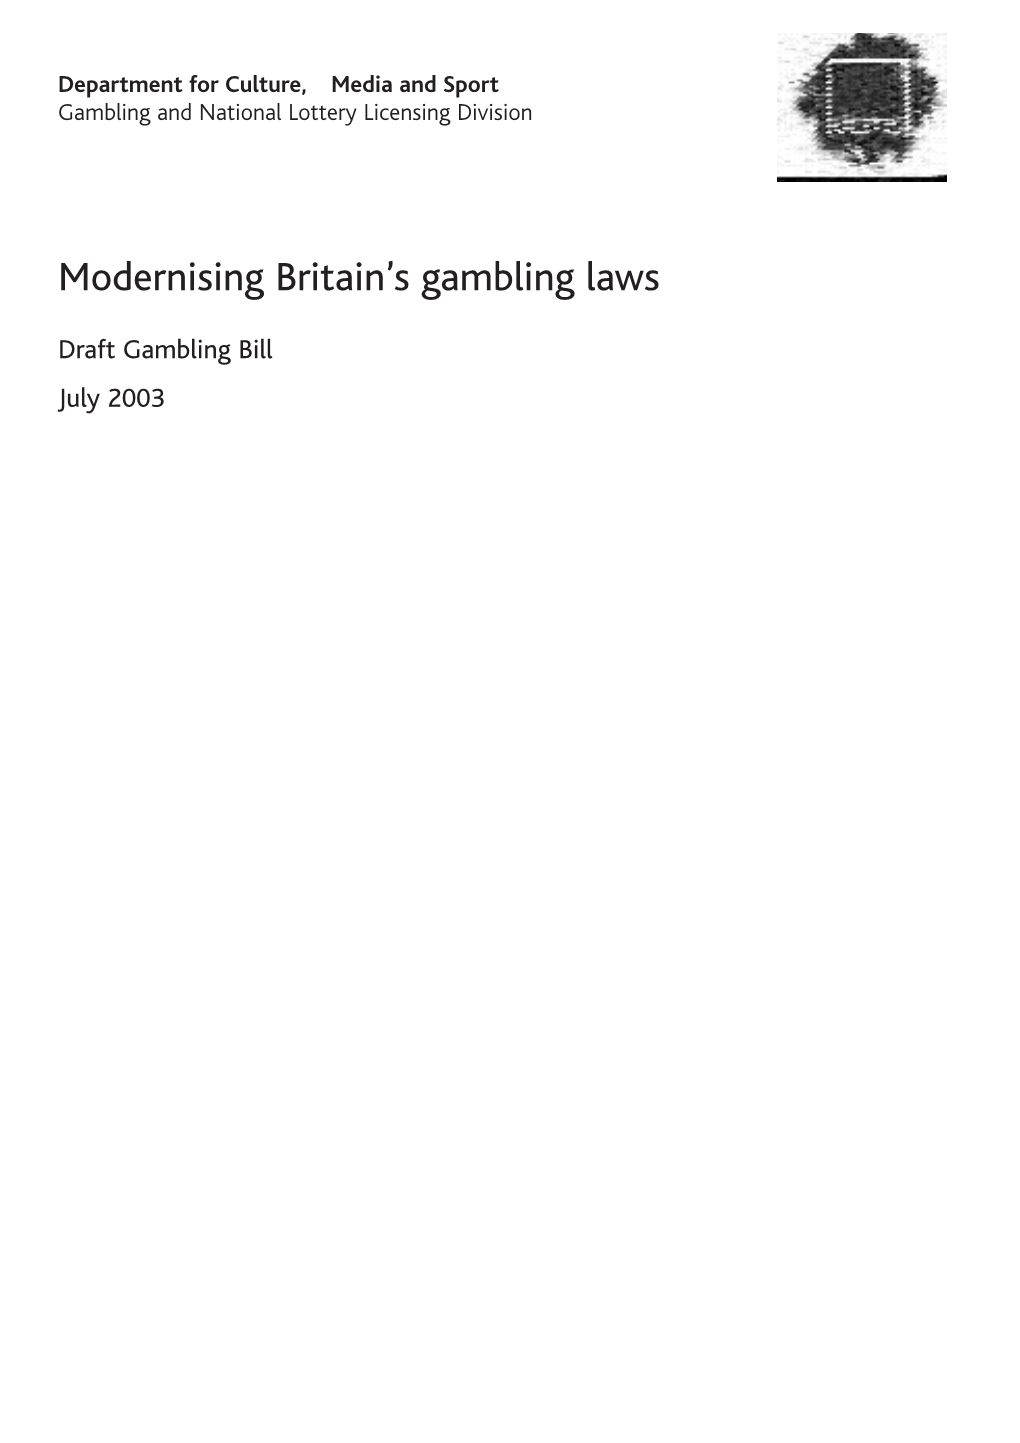 Modernising Britain's Gambling Laws CM 5878